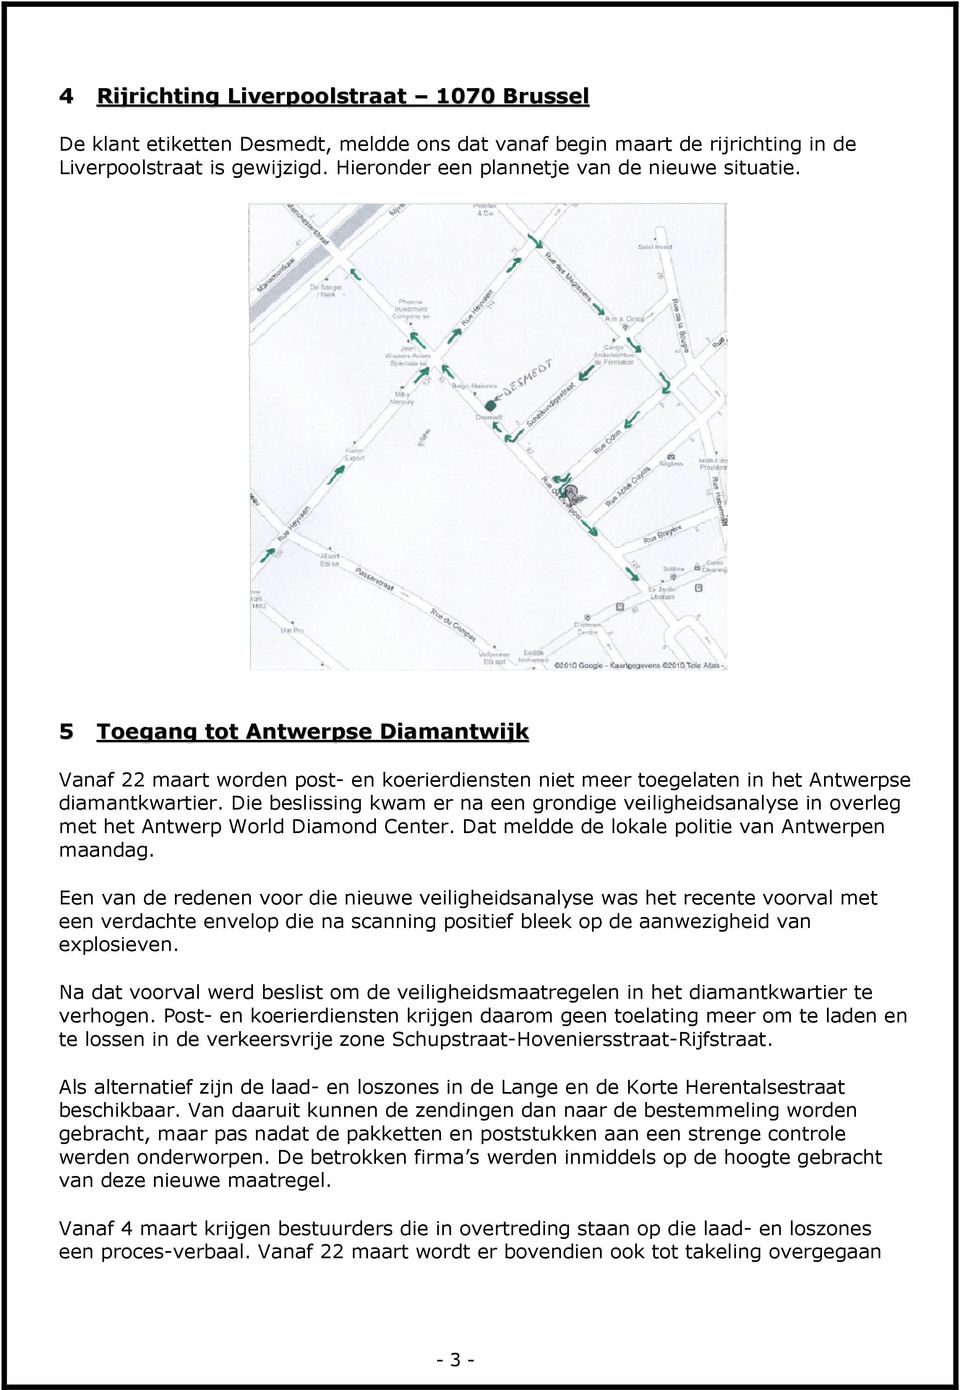 Die beslissing kwam er na een grondige veiligheidsanalyse in overleg met het Antwerp World Diamond Center. Dat meldde de lokale politie van Antwerpen maandag.